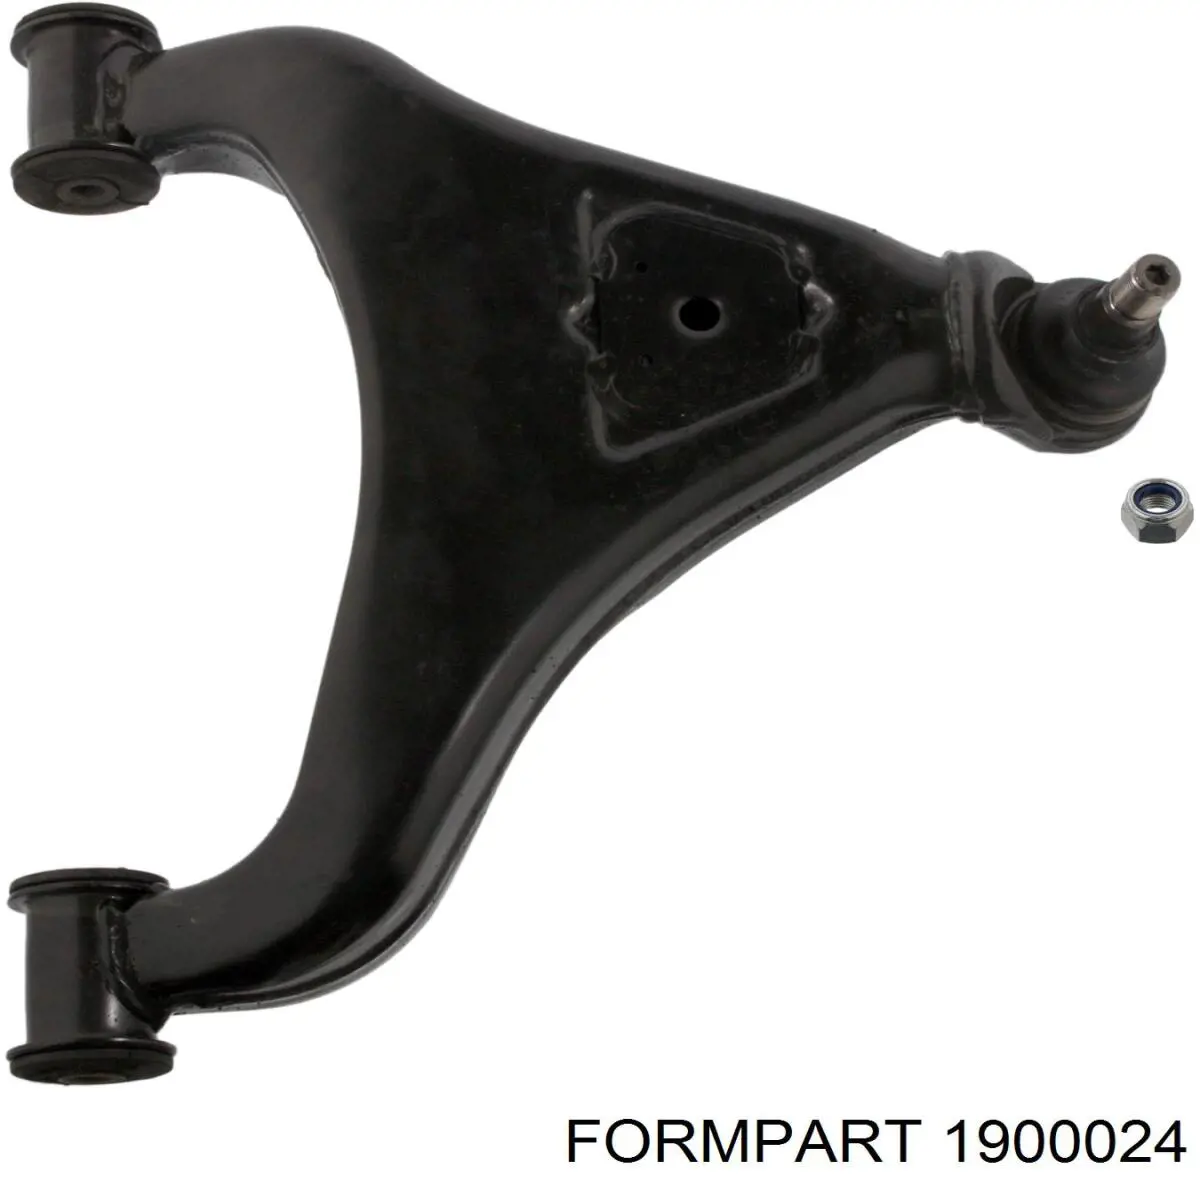 1900024 Formpart/Otoform silentblock de suspensión delantero inferior